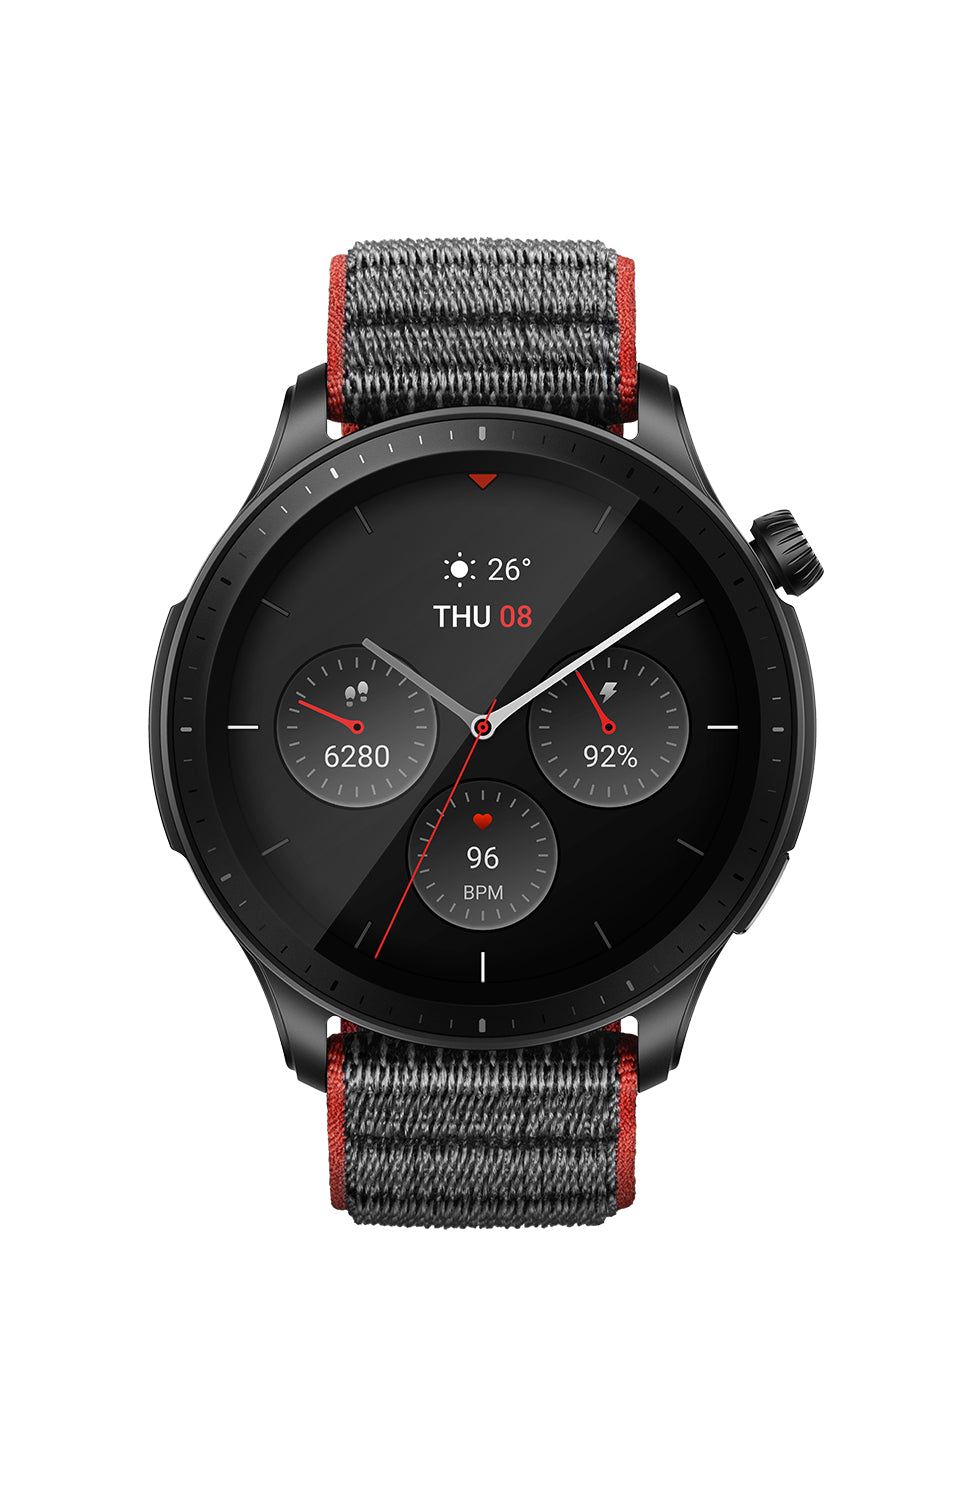 Amazfit GTR 4 Limited Edition Redefines Premium Smartwatch Design 